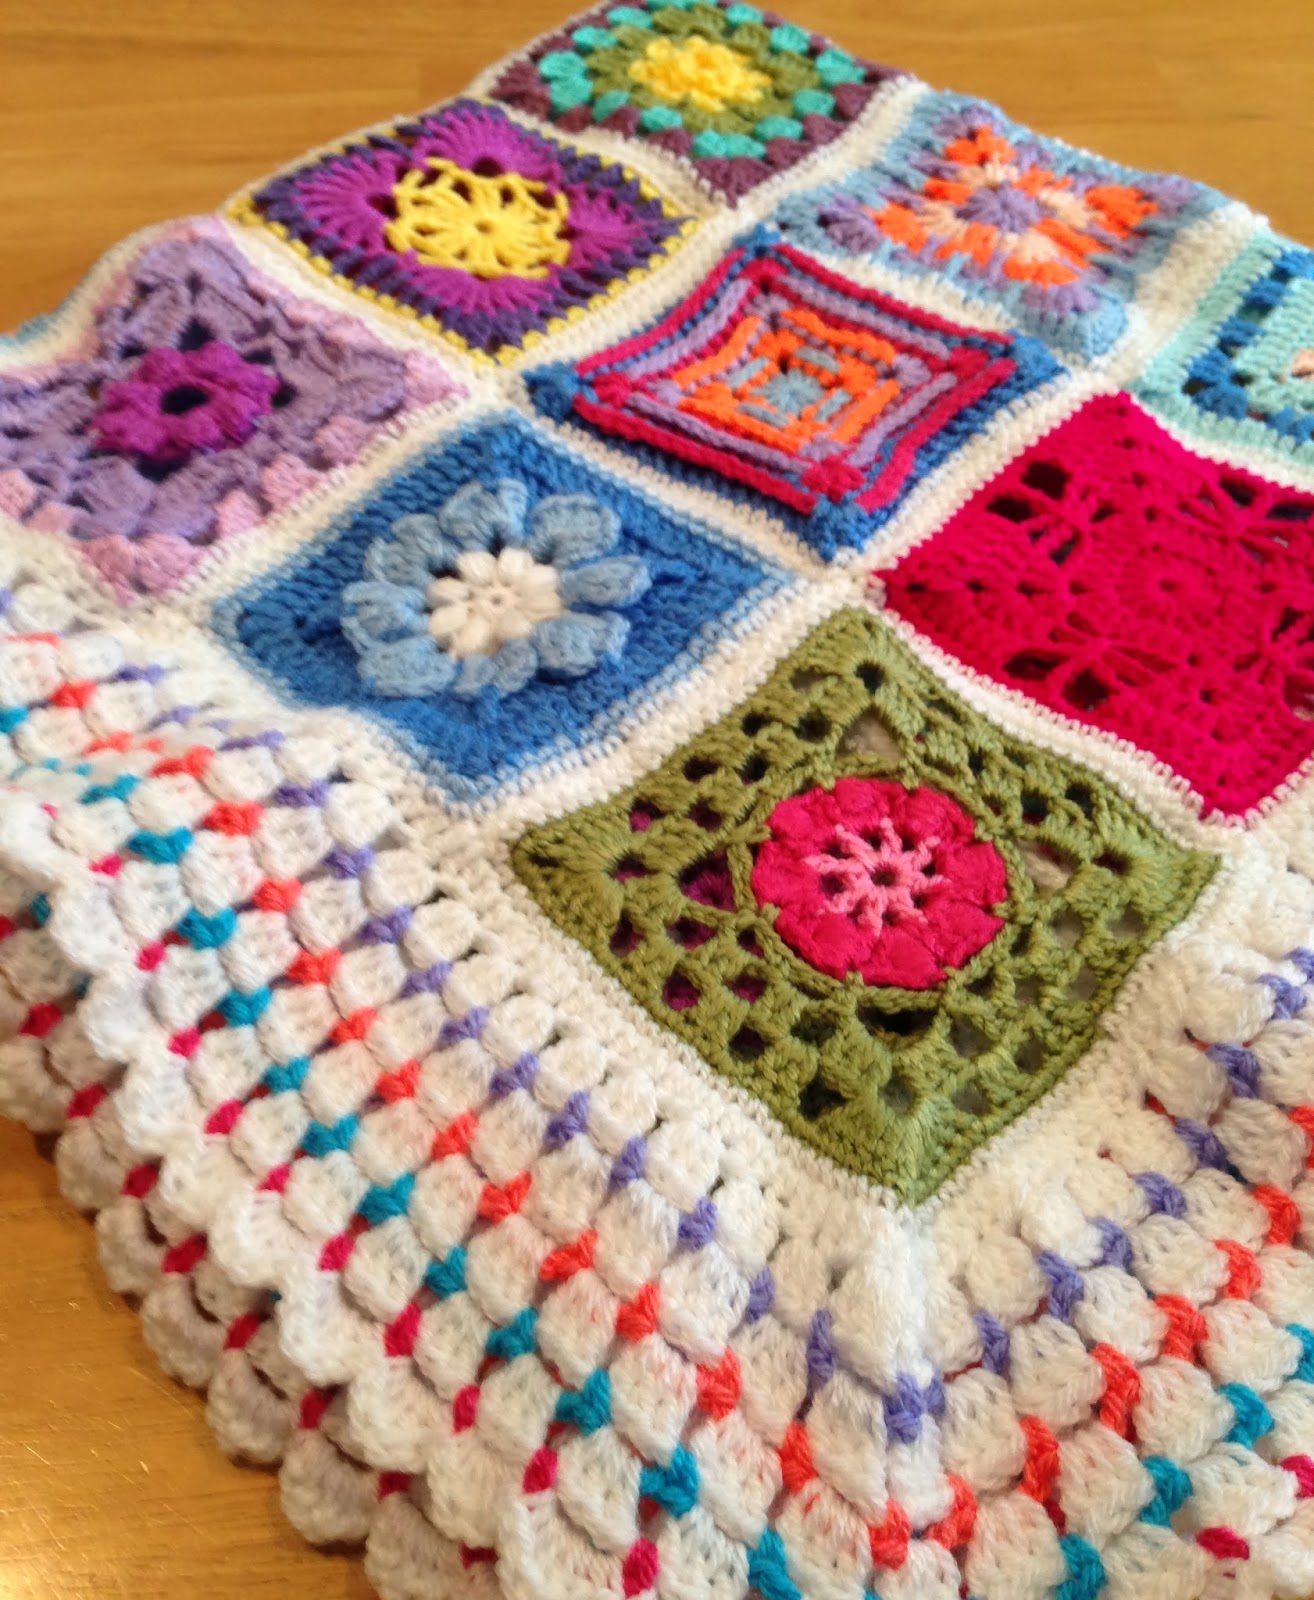 Da's Crochet Connection: Where are the 365 Granny Squares?